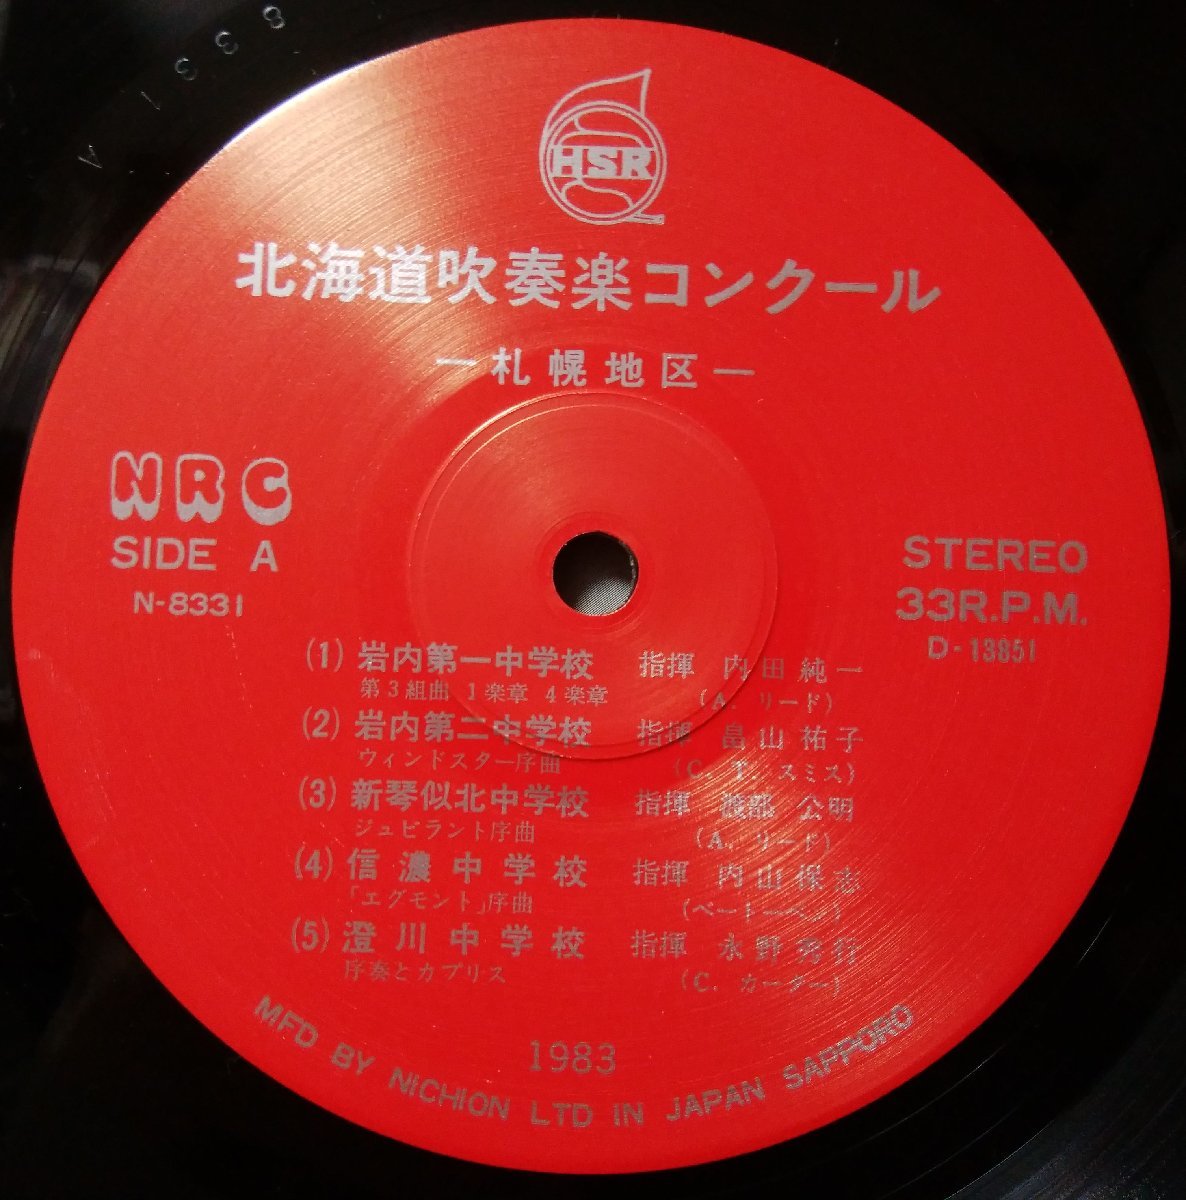 ** Showa 58 отчетный год Hokkaido духовая музыка темно синий прохладный район собрание *1983 год реальный . запись запись * собственный . произведение запись не продается * аналог запись [2140TPR